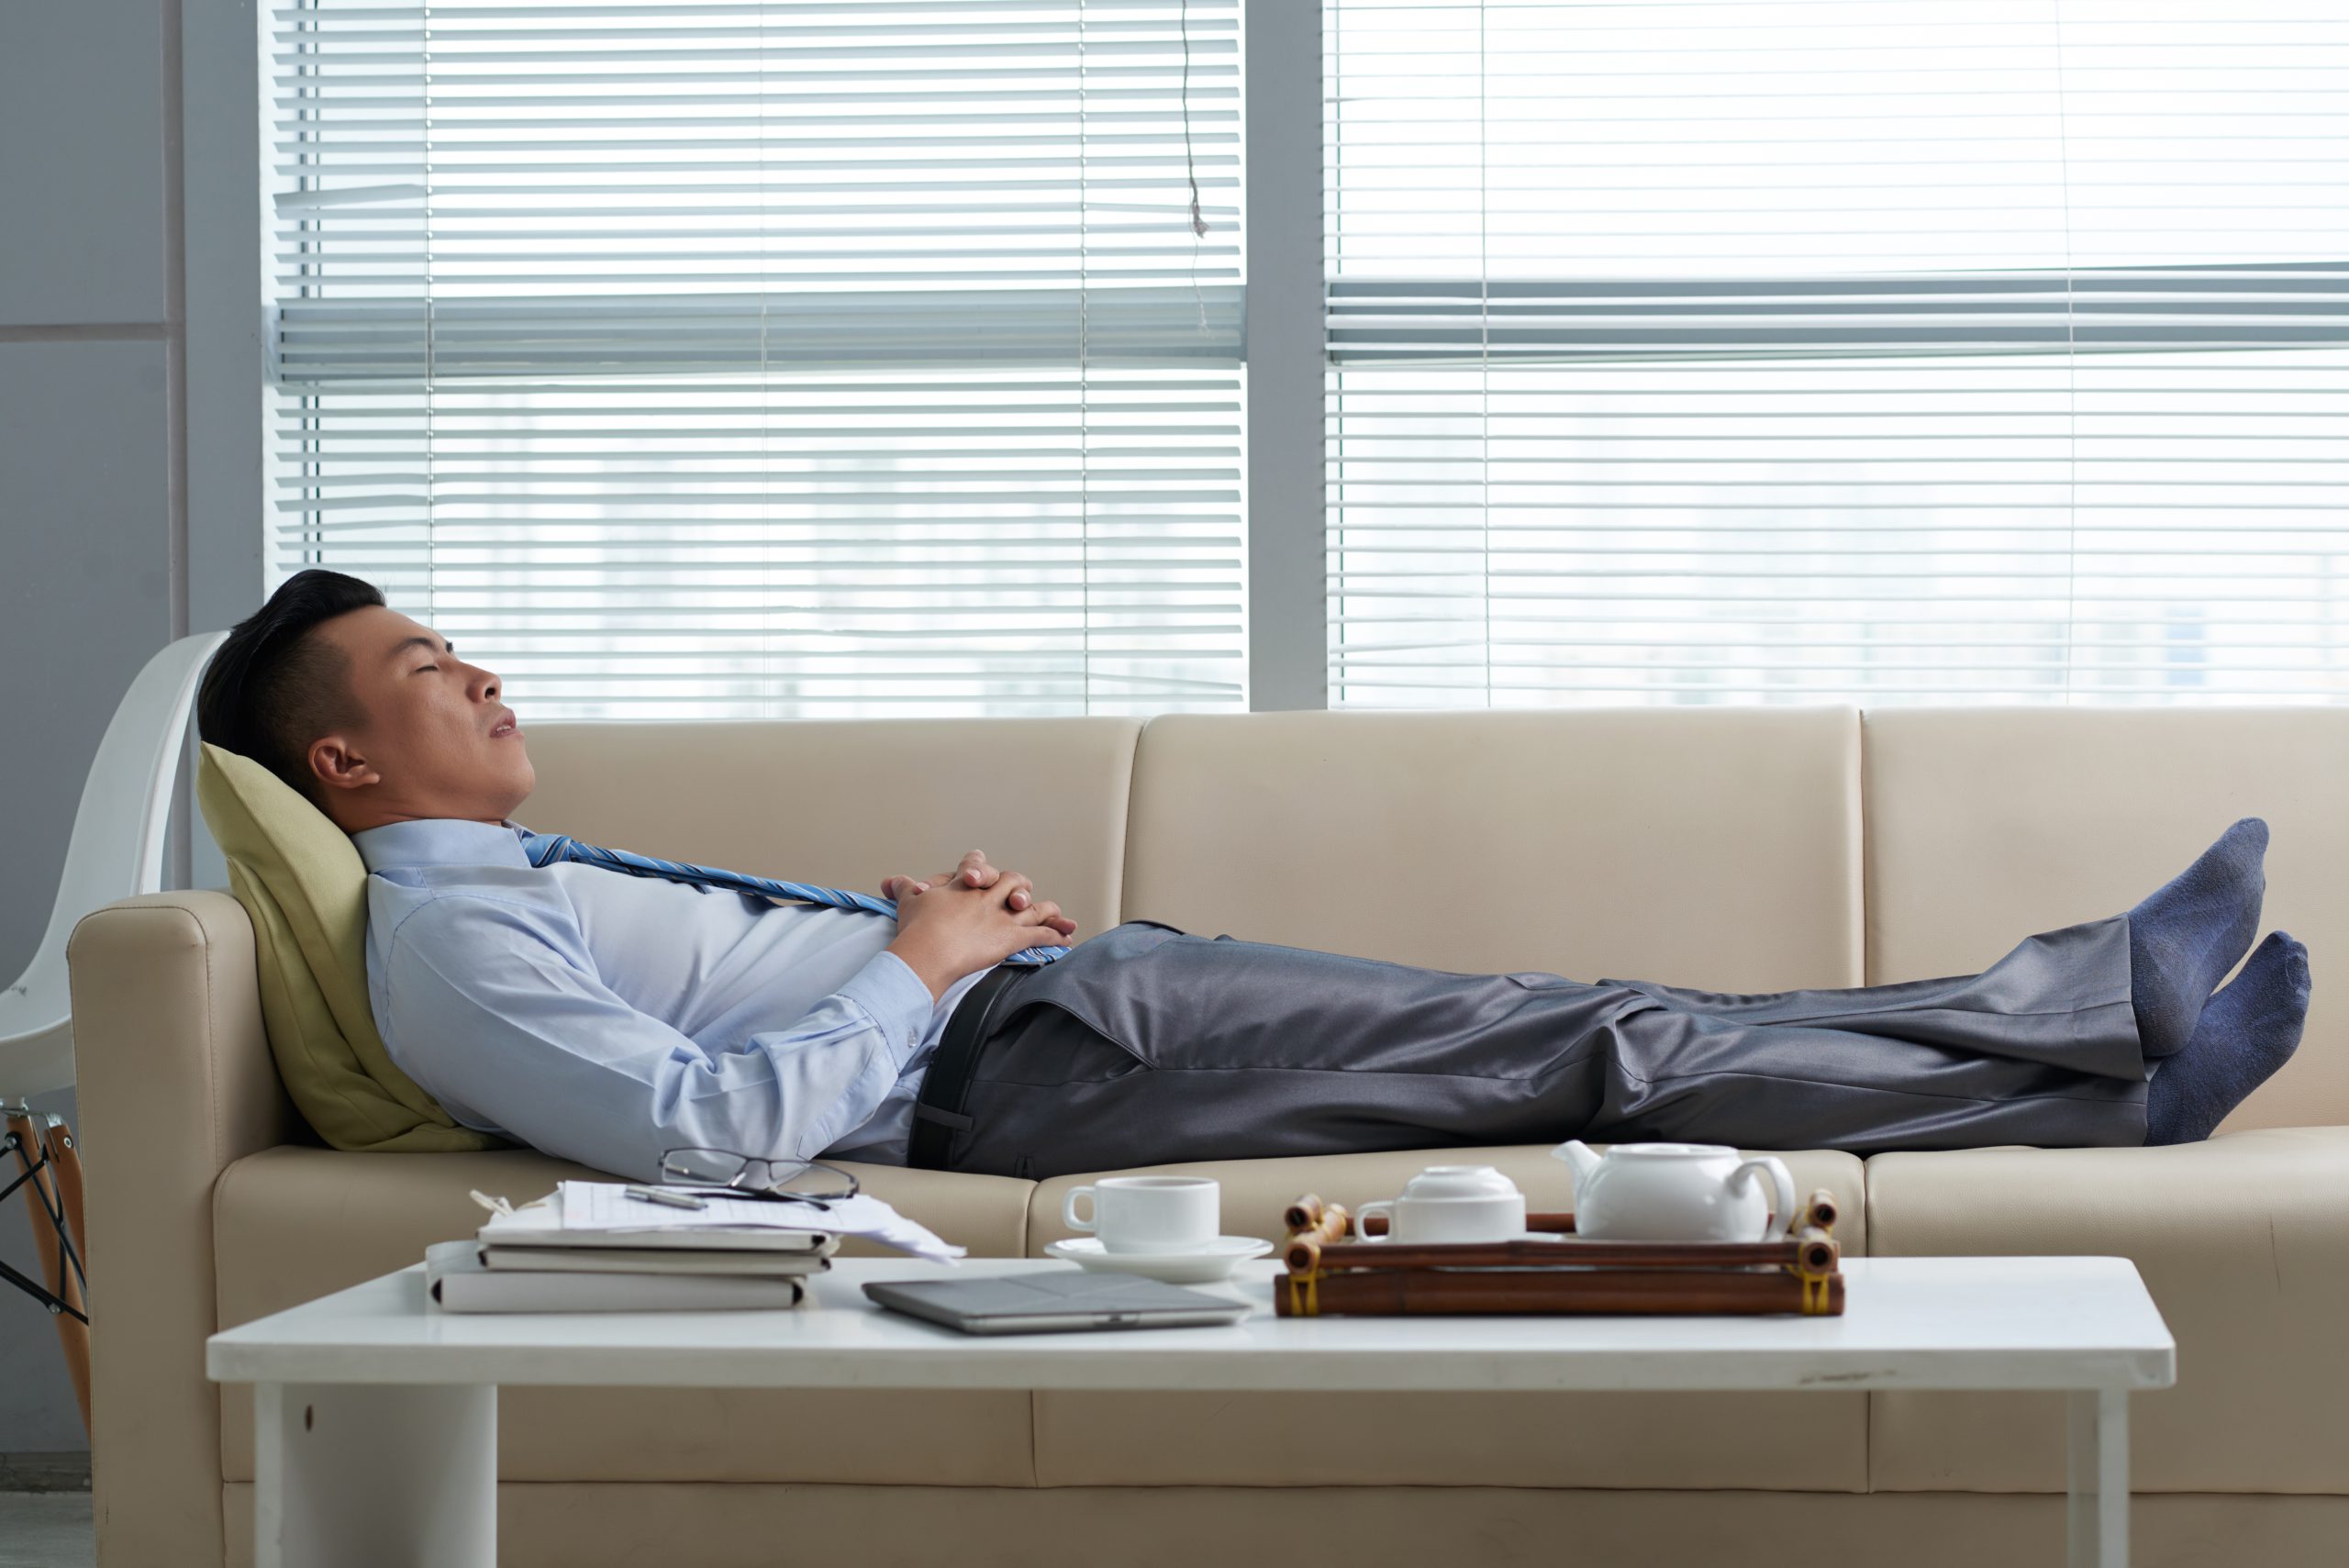 La importancia del descanso durante la jornada laboral